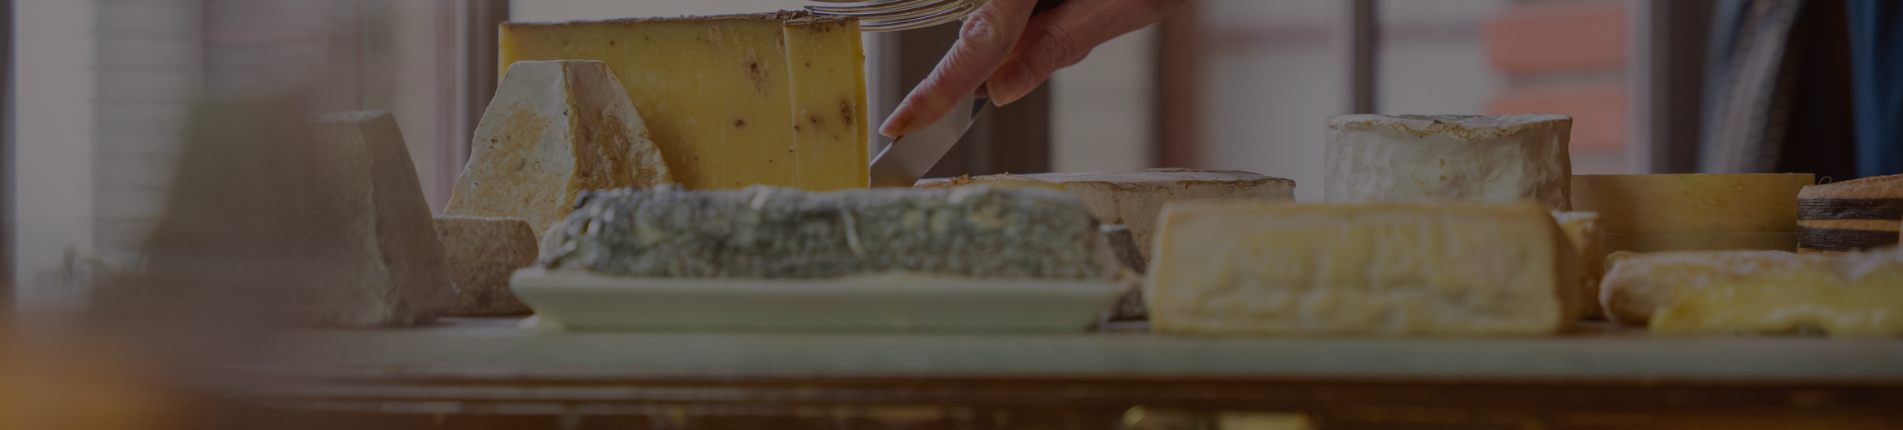 Découvrez les trésors cachés de la France à travers ses fromages- Le Grand Cerf